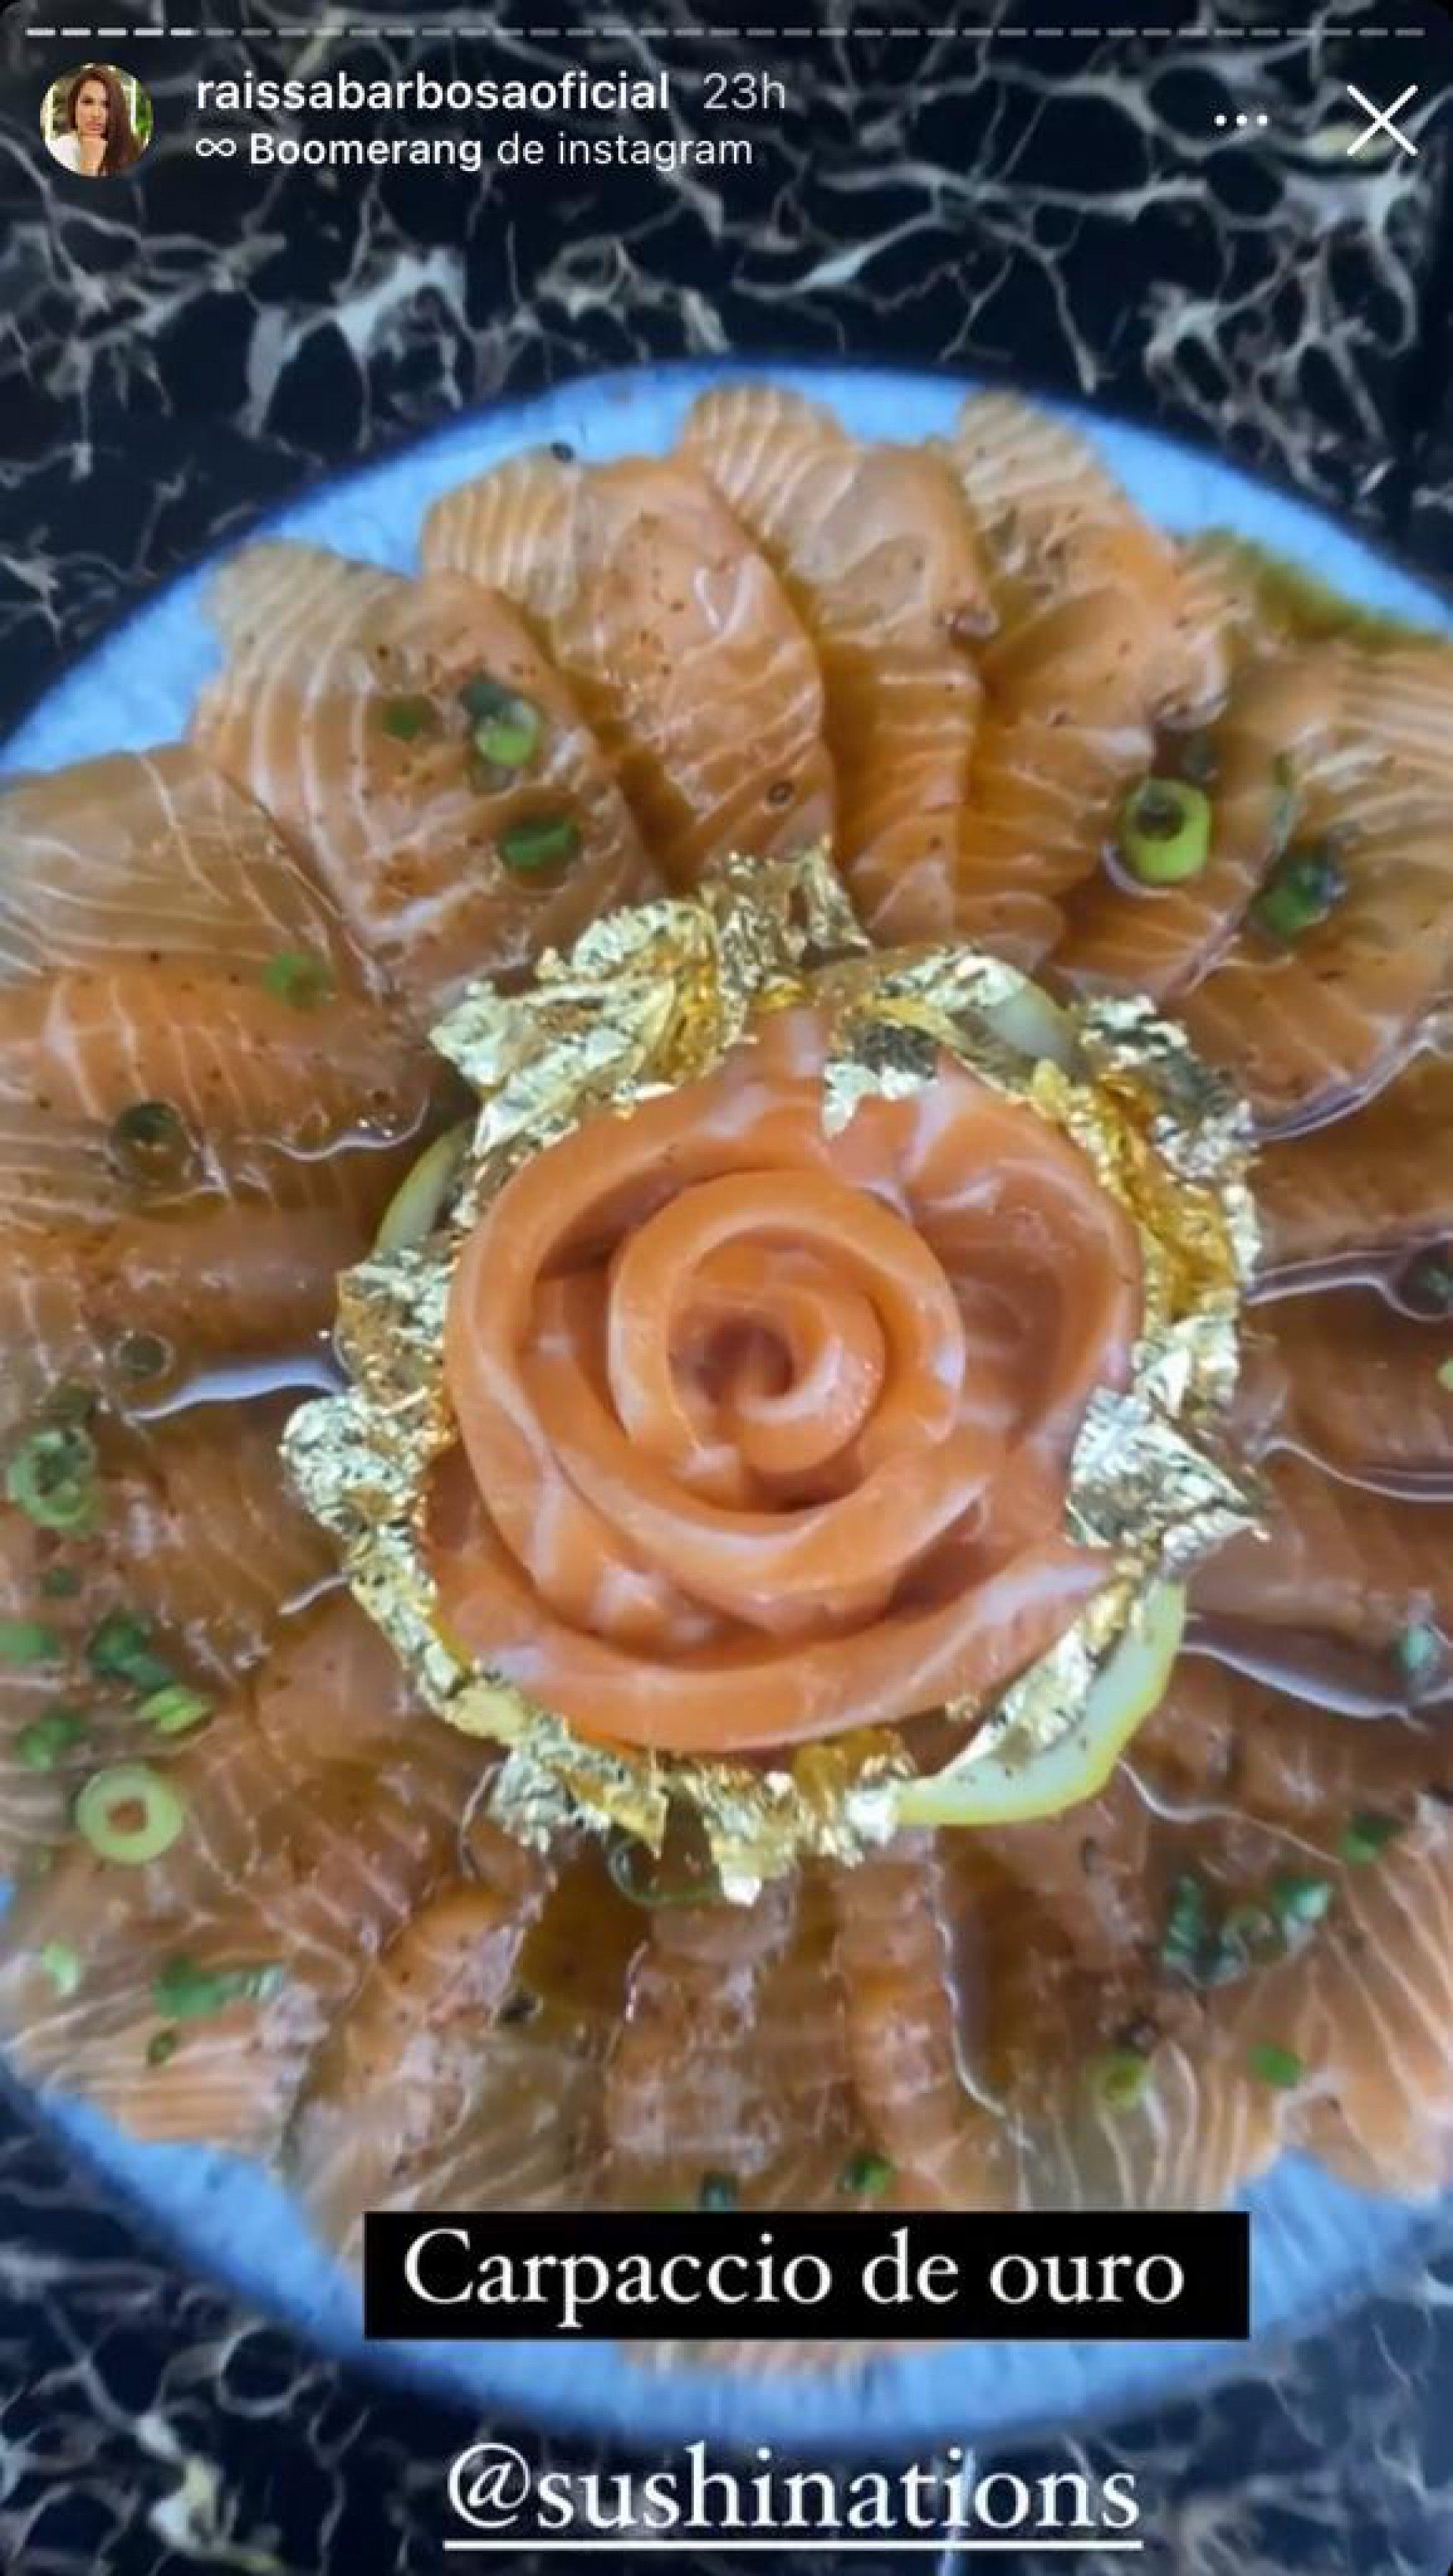 Em Dubai, Raissa Barbosa ostenta comendo ‘carpaccio de ouro  - reprodução Instagram 